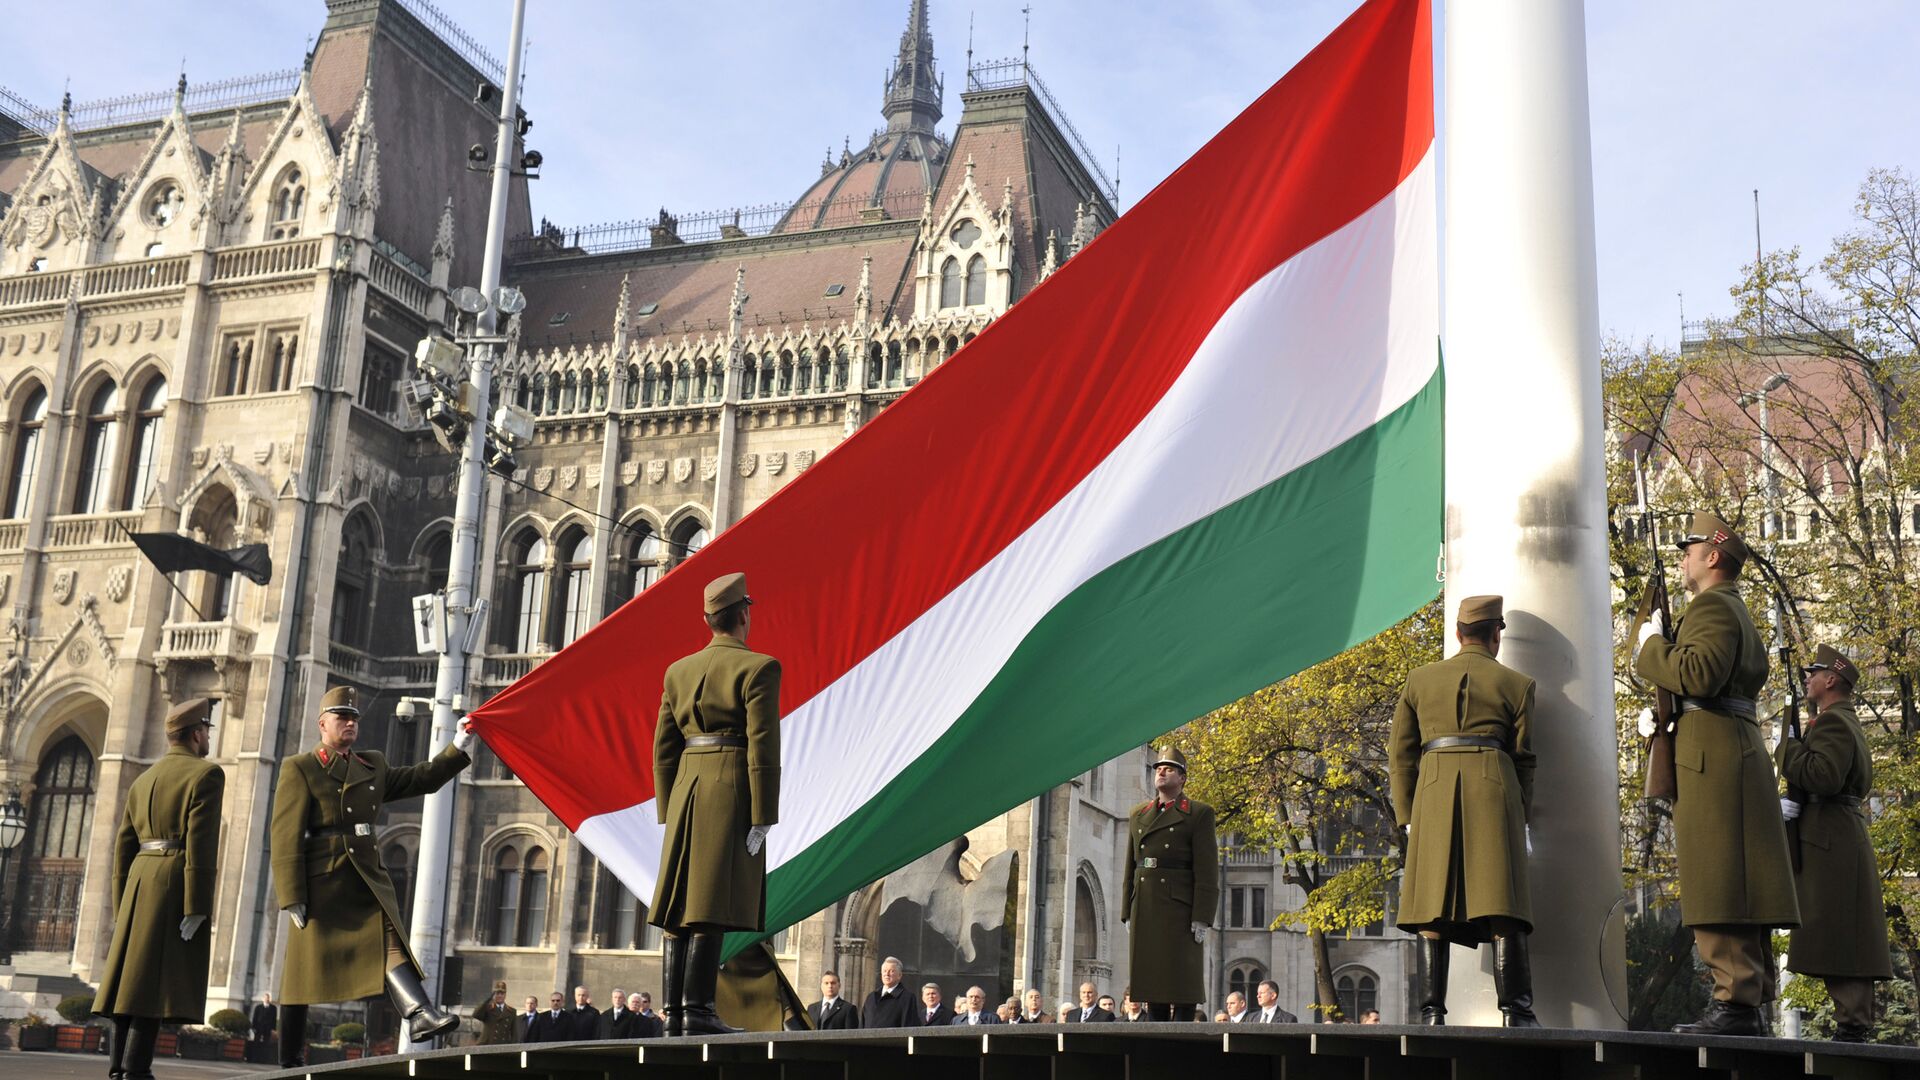 Поднятие национального флага Венгрии в Будапеште - Sputnik Латвия, 1920, 29.06.2021